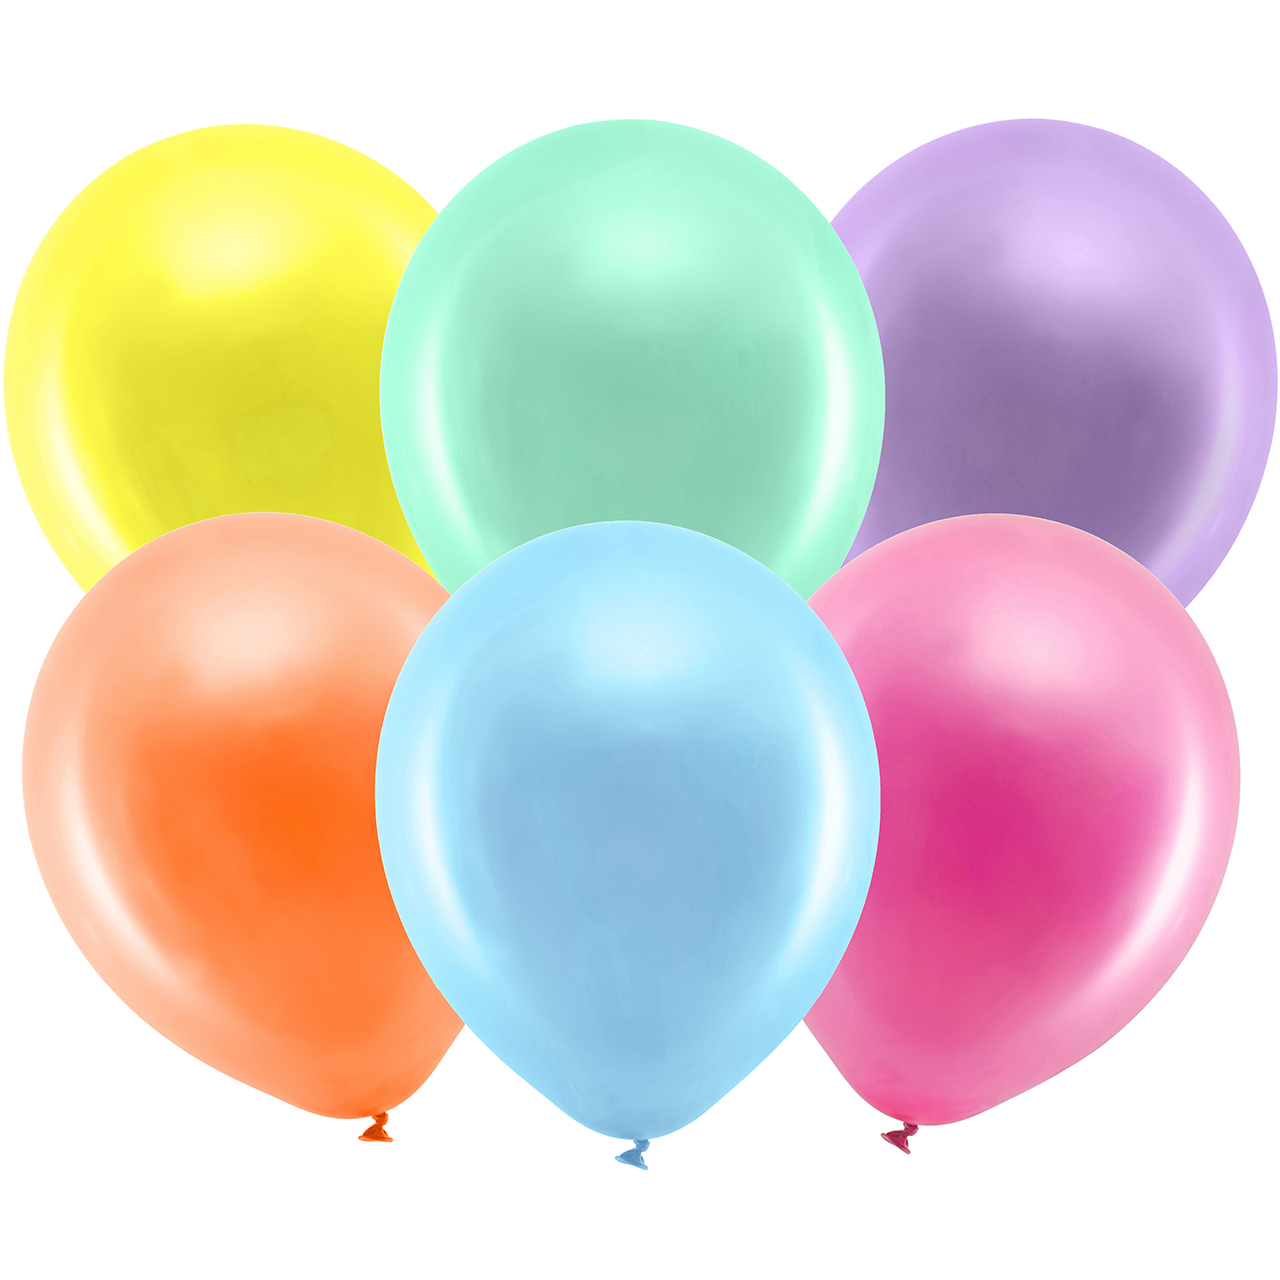 10 Ballons Regenbogen Metallic